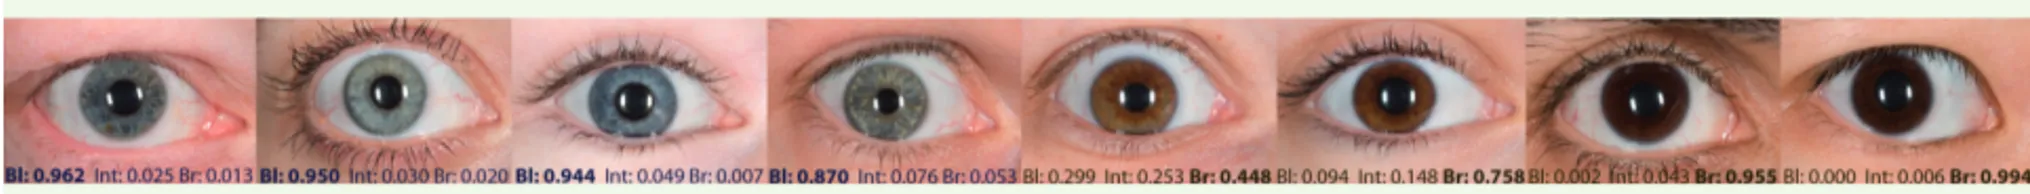 Figure 1. Prédiction de la couleur des yeux selon le système IrisPlex. Cette figure montre des yeux humains rangés selon la prédiction de couleur  fondée sur l’ADN et établie avec le système IrisPlex